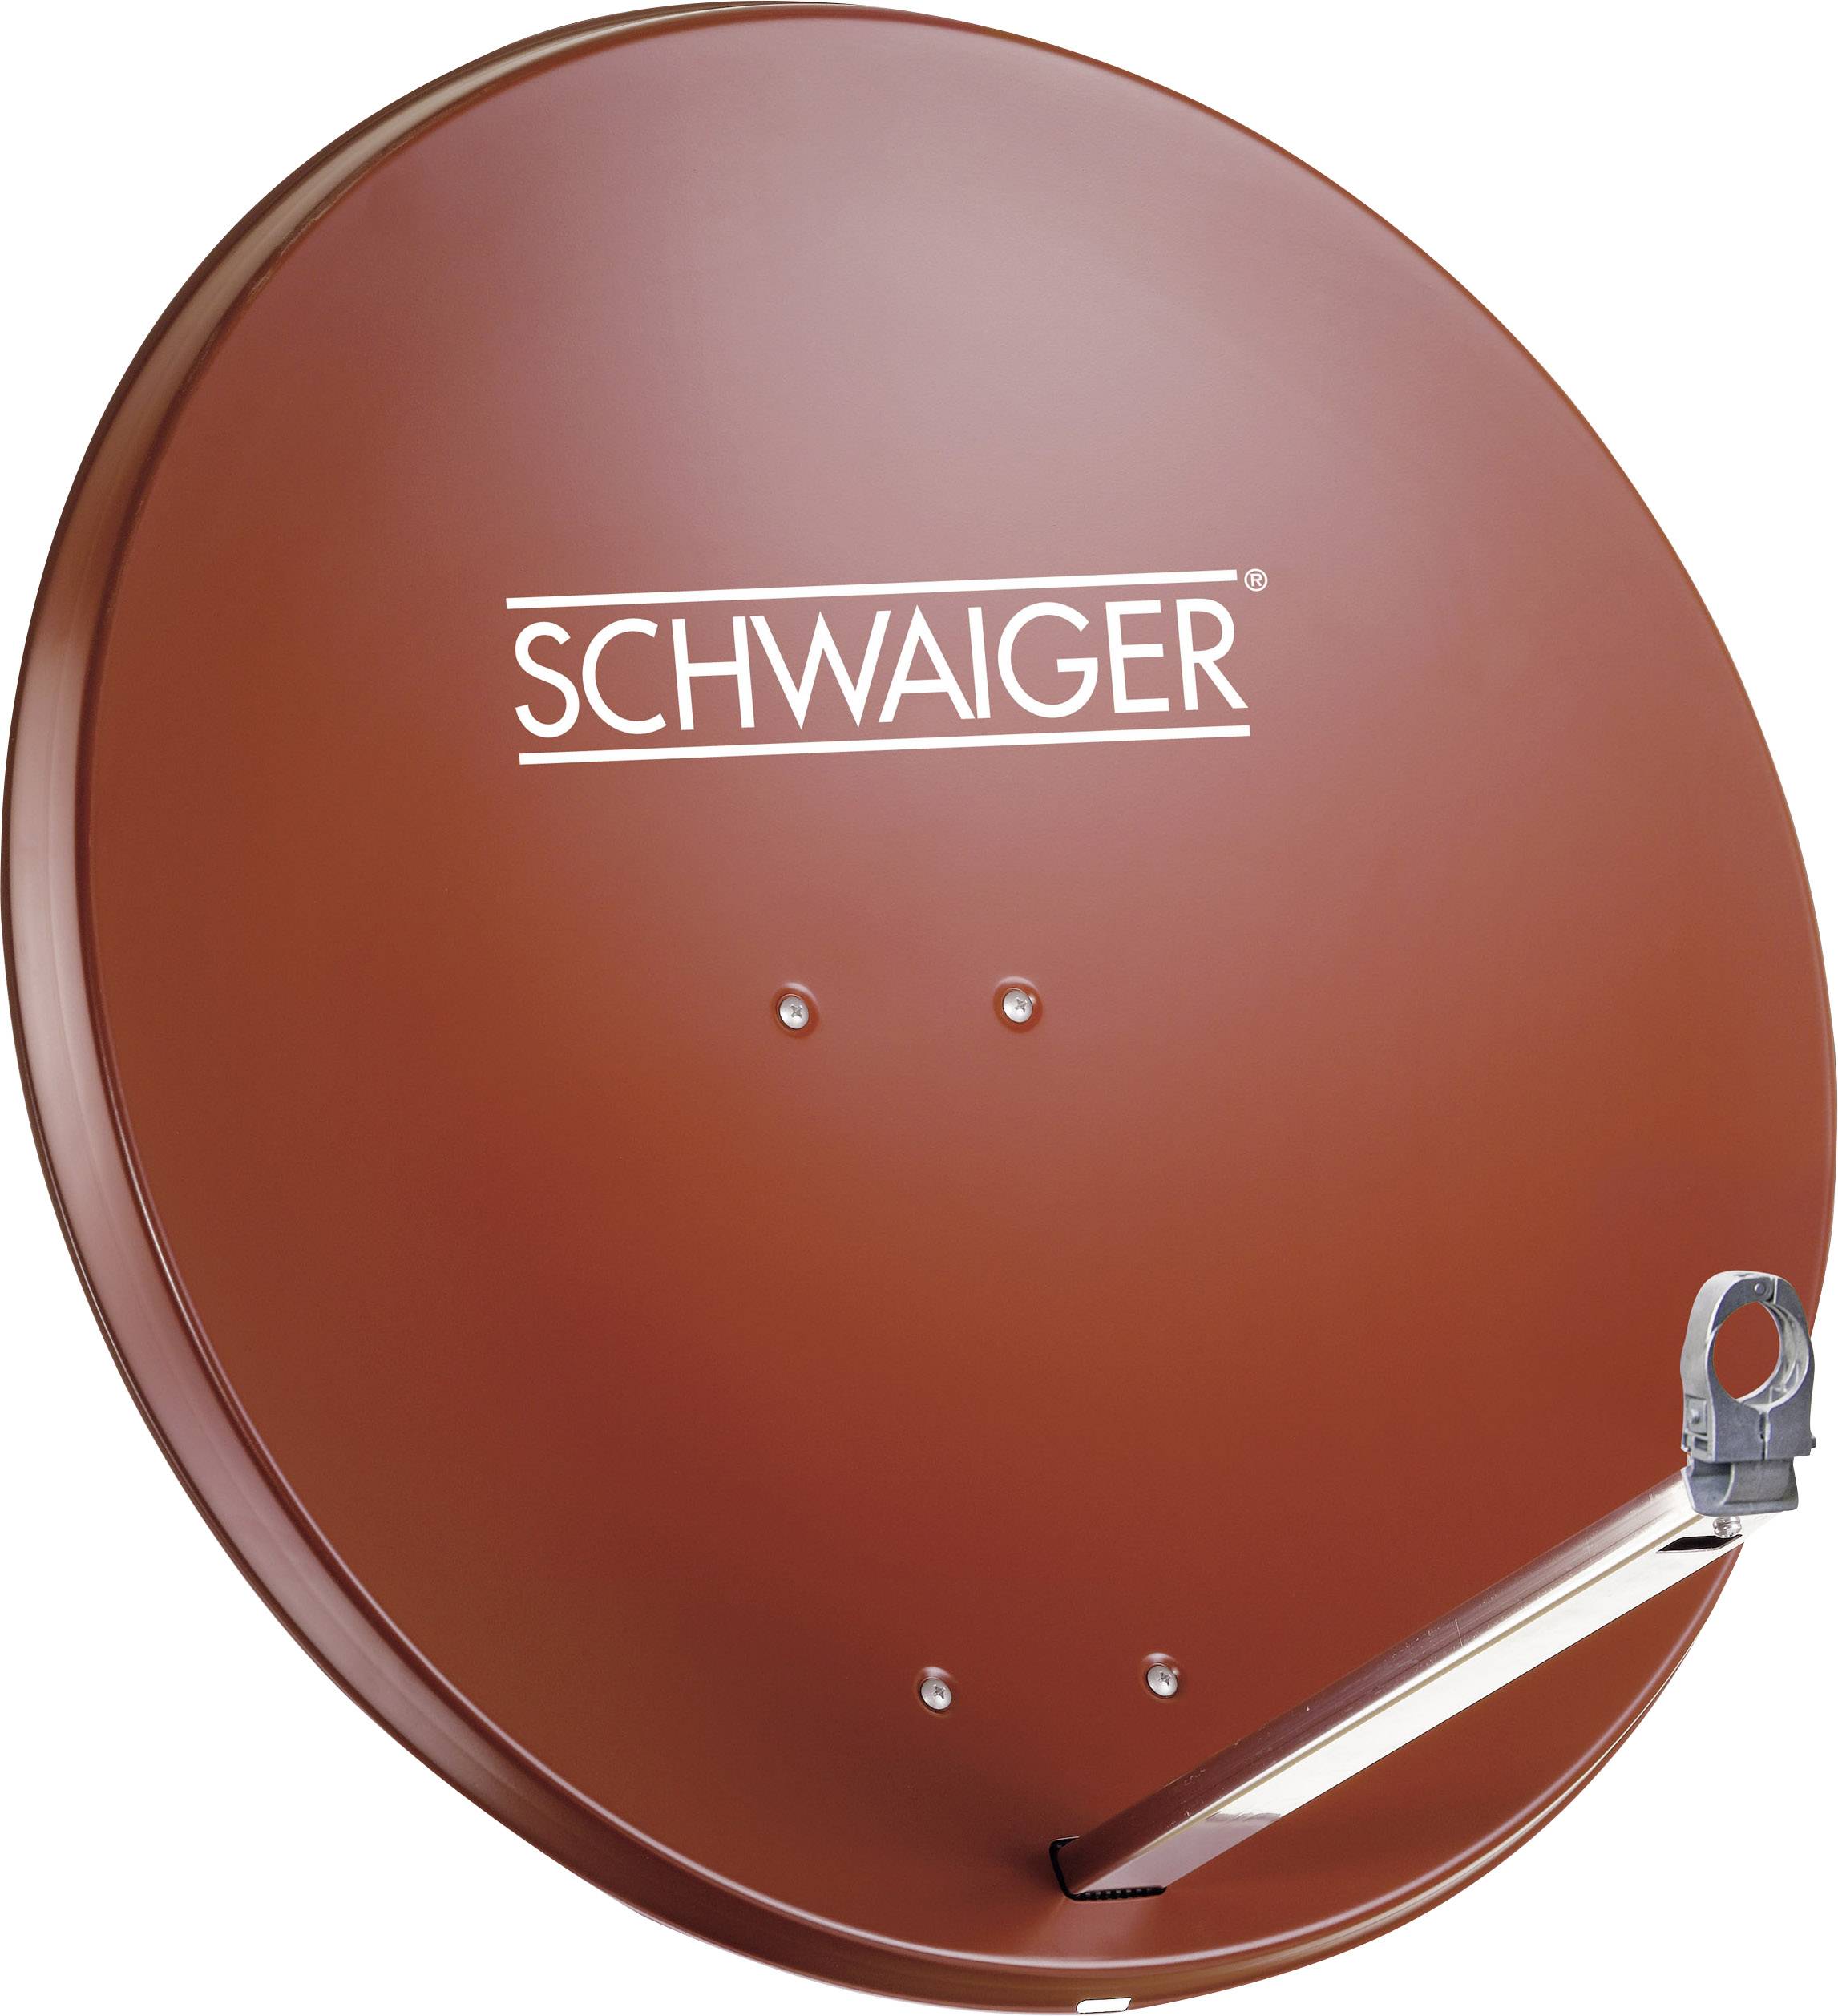 SCHWAIGER SPI991.2SET SAT-Anlage ohne Receiver Teilnehmer-Anzahl 4 80 cm